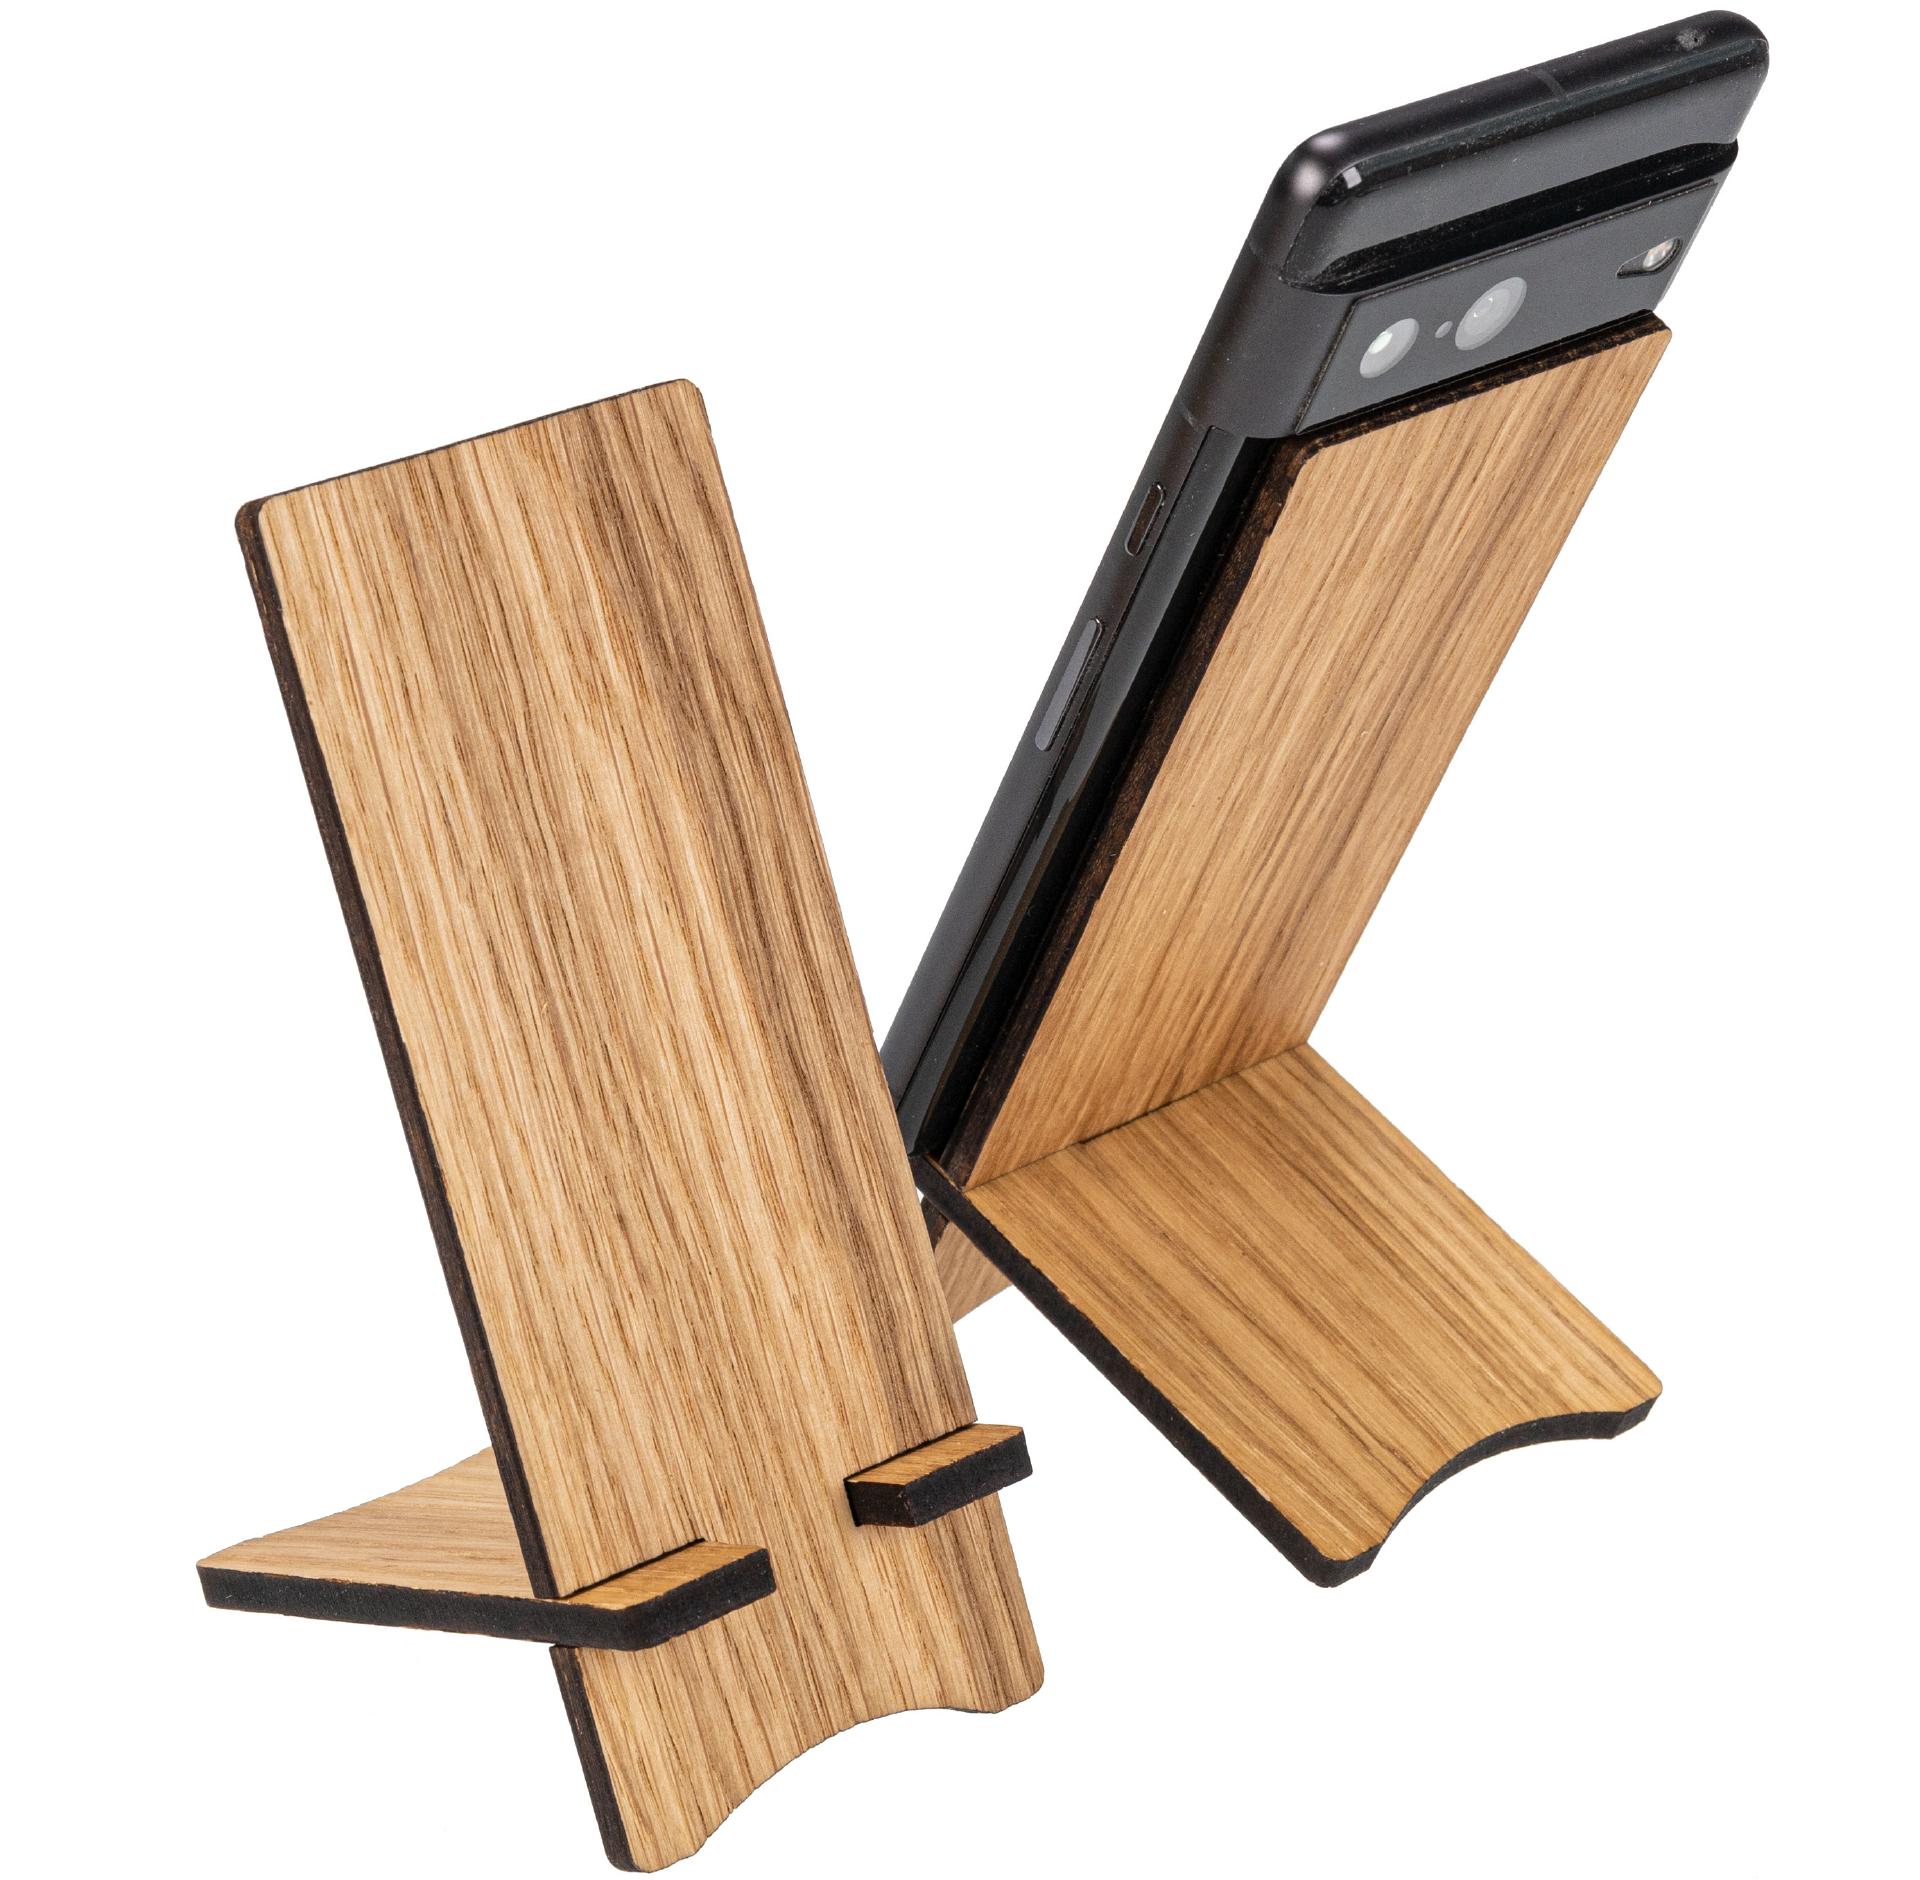 Holz Handy Smartphone Halter Eiche geoelt bestehend aus